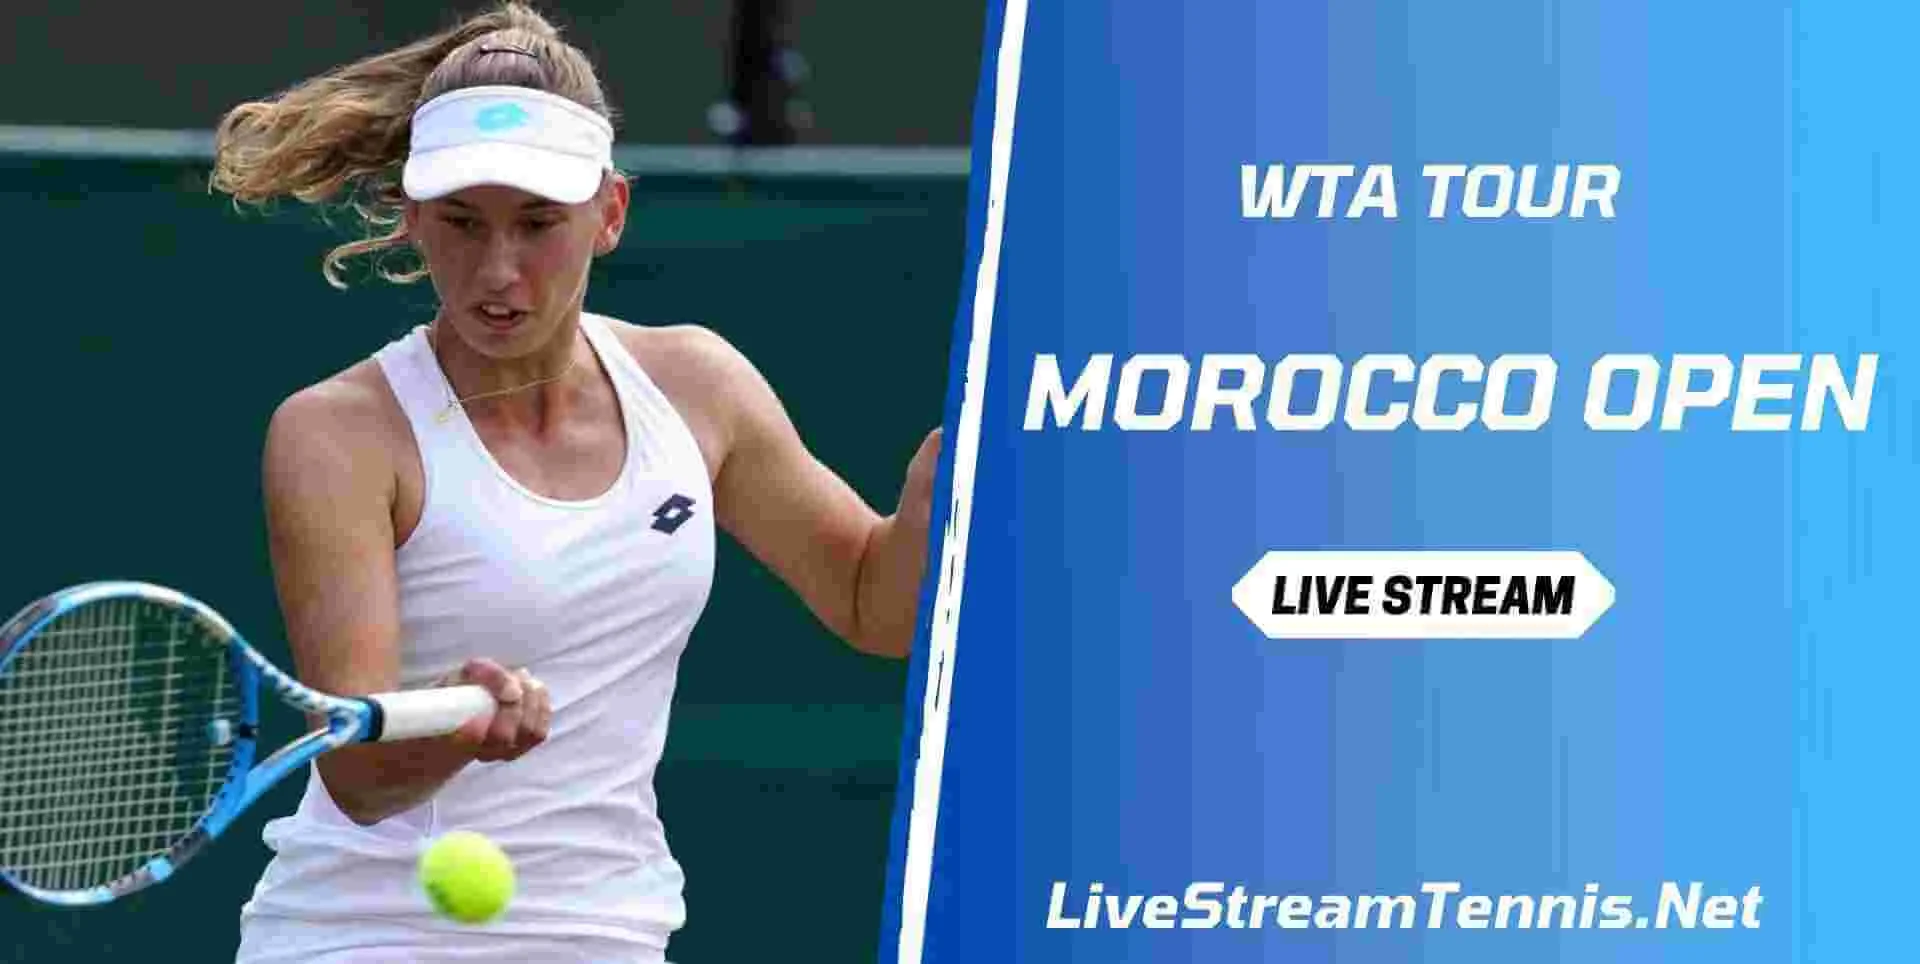 morocco-open-tennis-live-stream-wta-tour